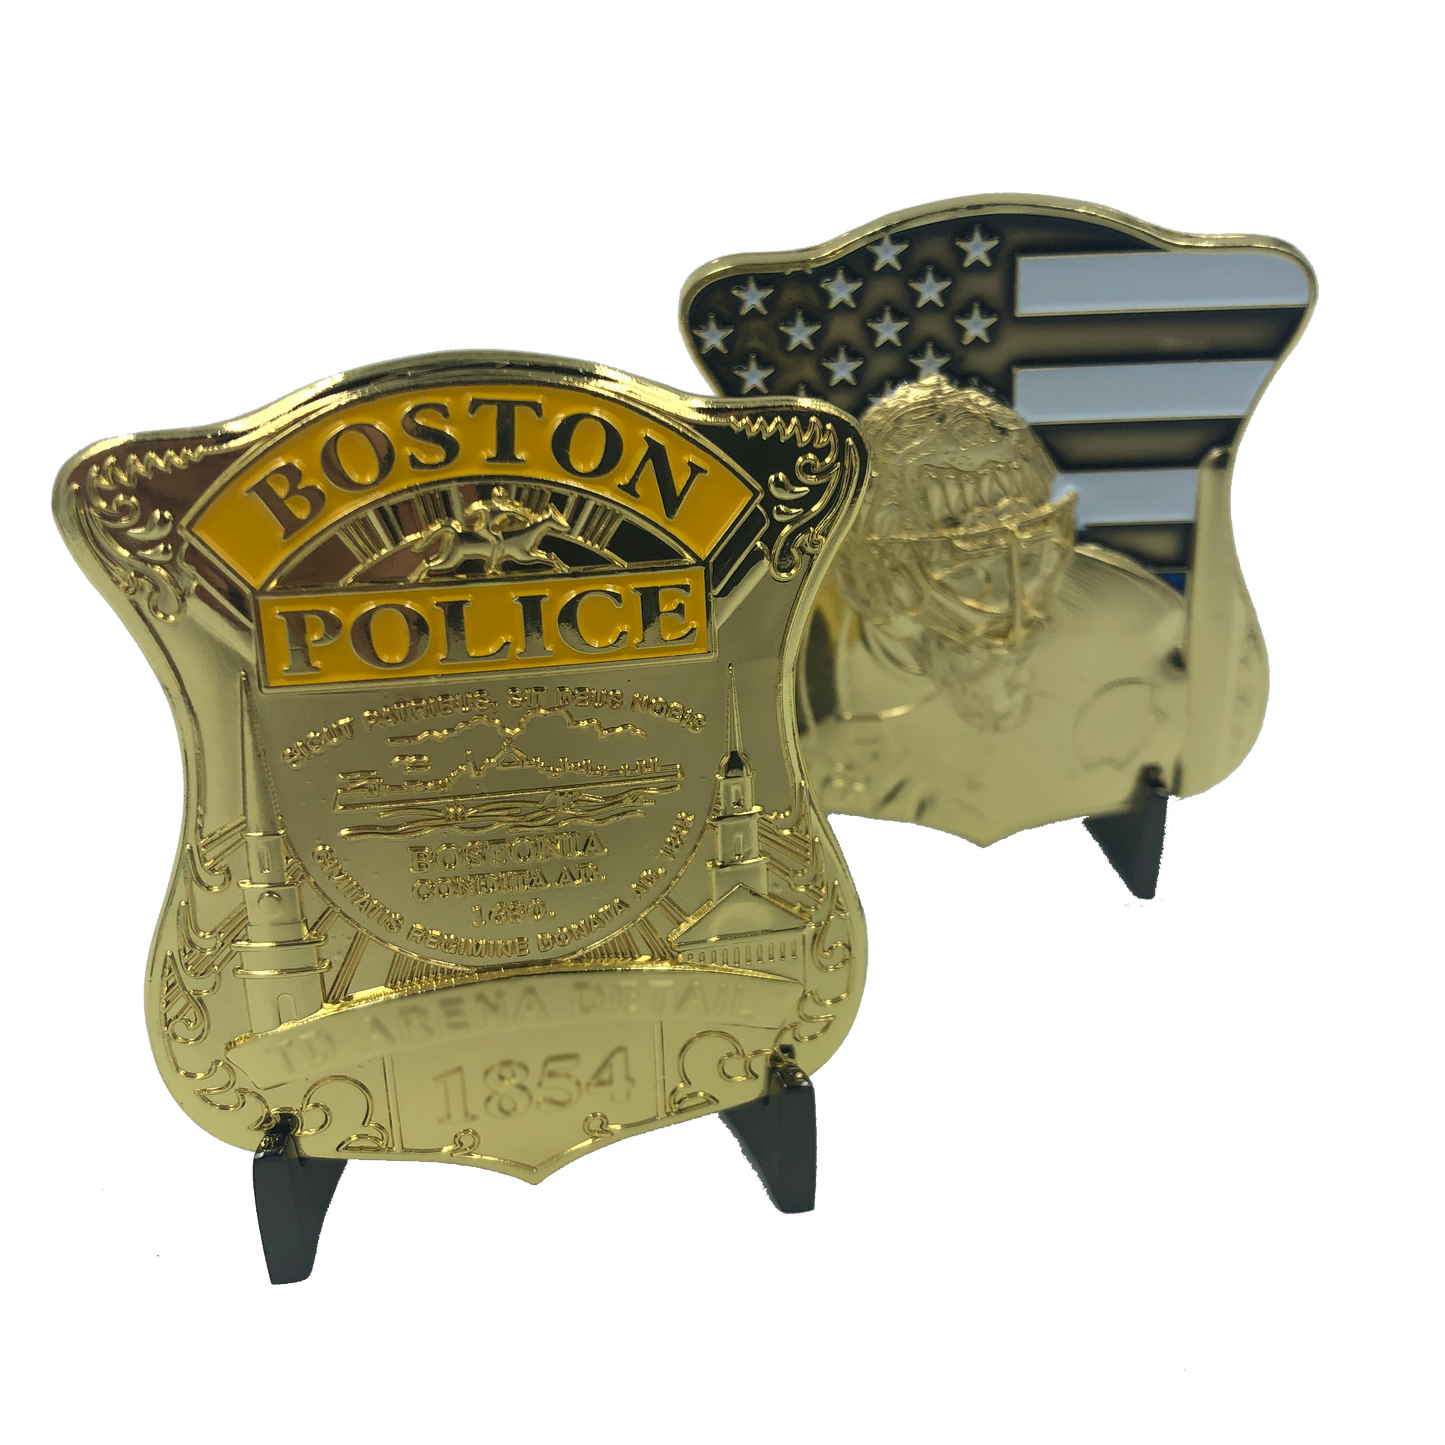 KK-006 Gold Boston Police Bruins Tuukka Rask Challenge Coin thin blue line NHL inspired